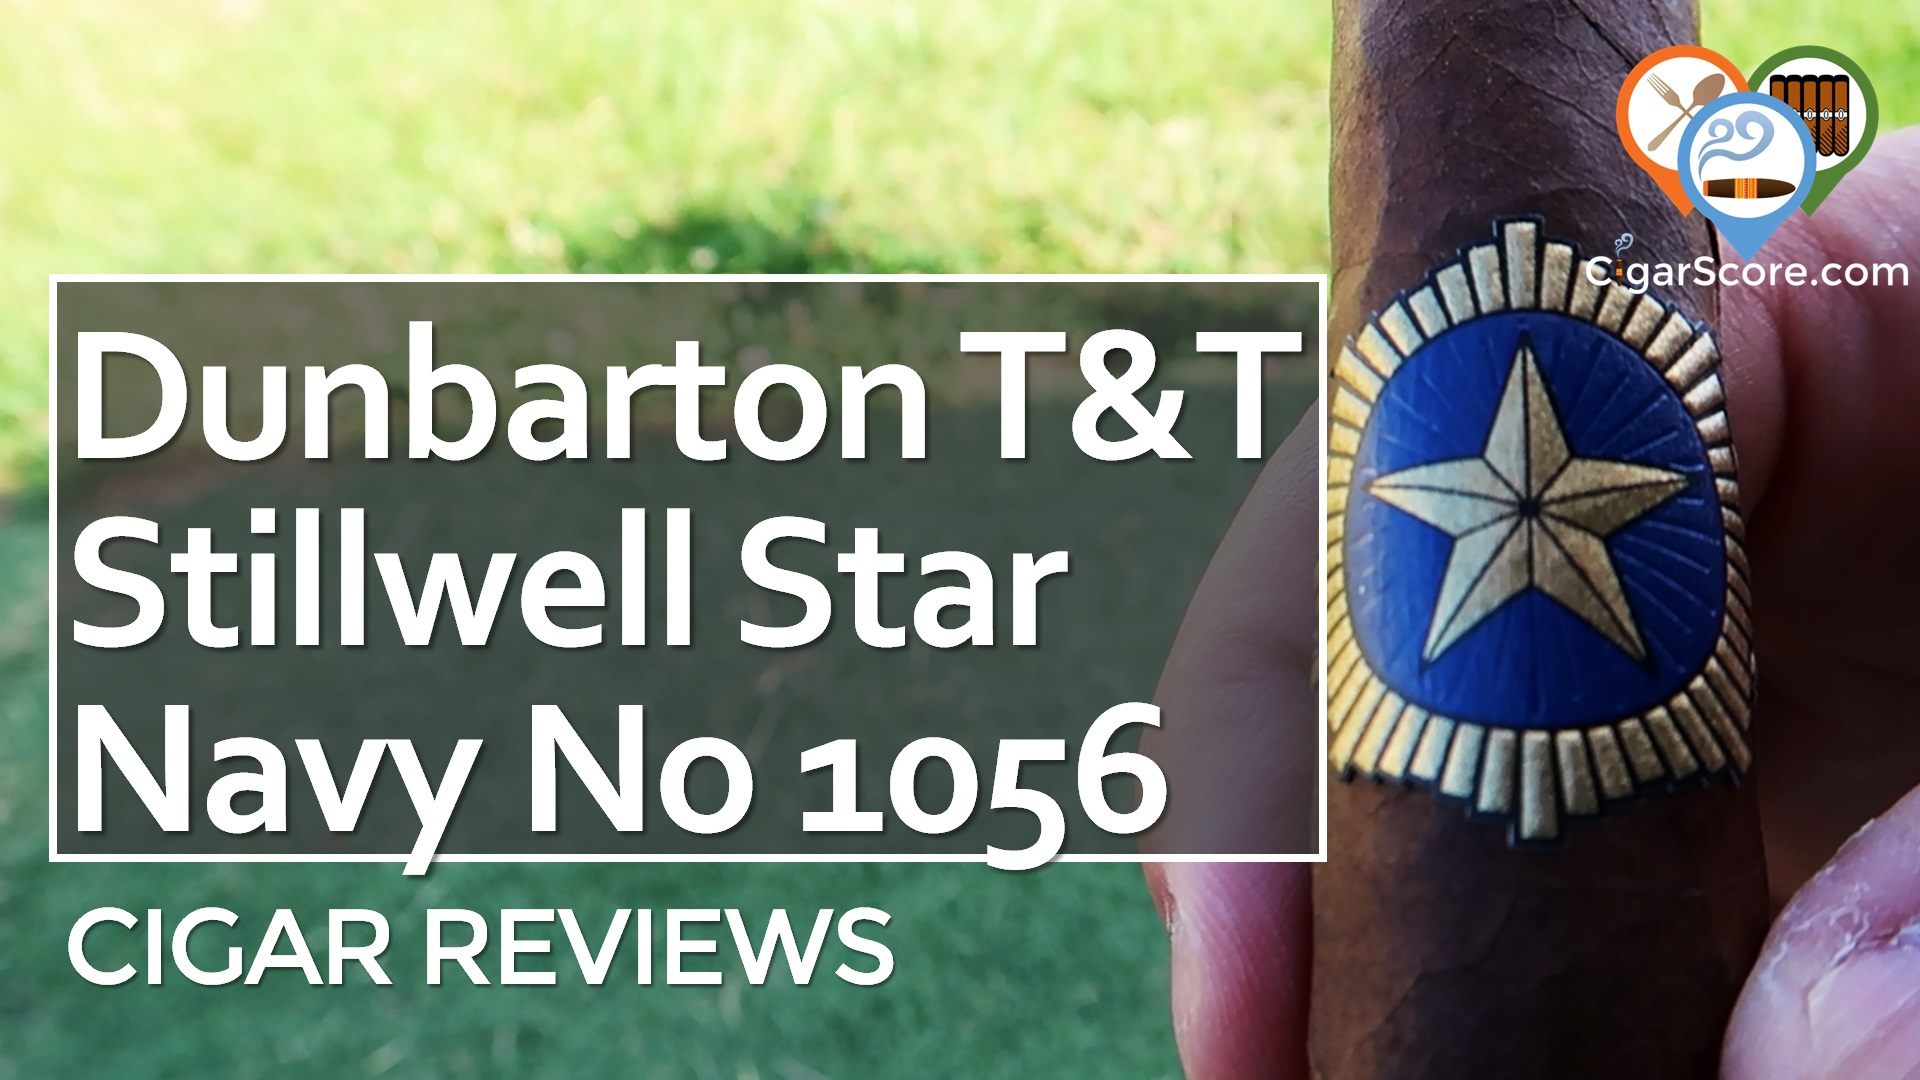 Cigar Review: Dunbarton T&T Stillwell Star Navy No. 1056 Toro